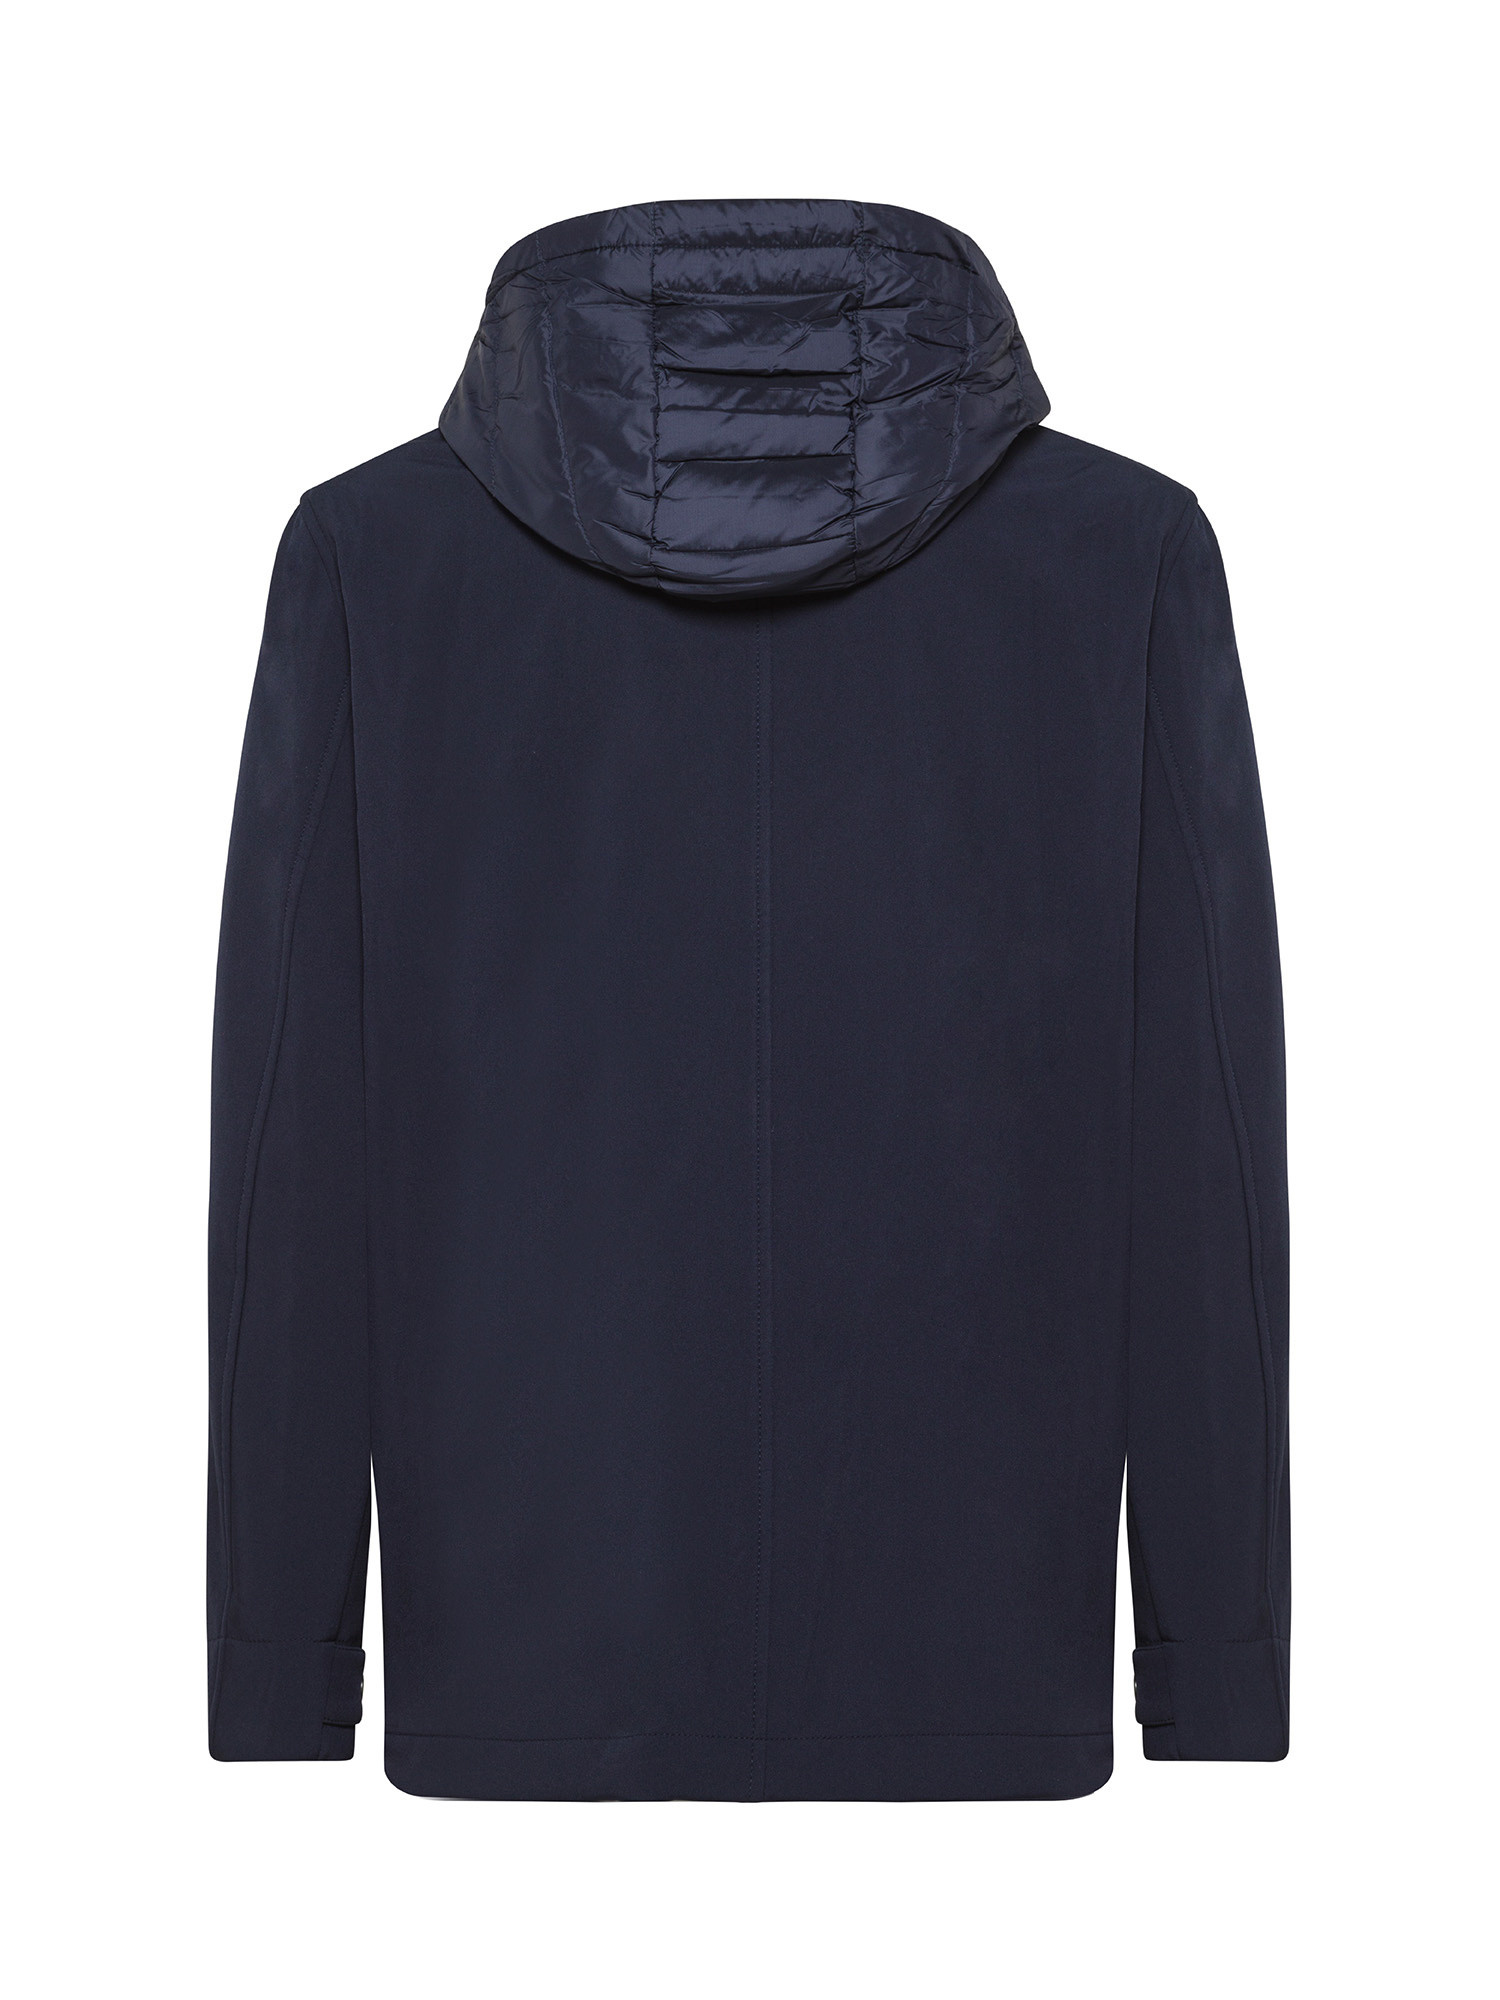 Ciesse Piumini - Jacket with hood, Dark Blue, large image number 1